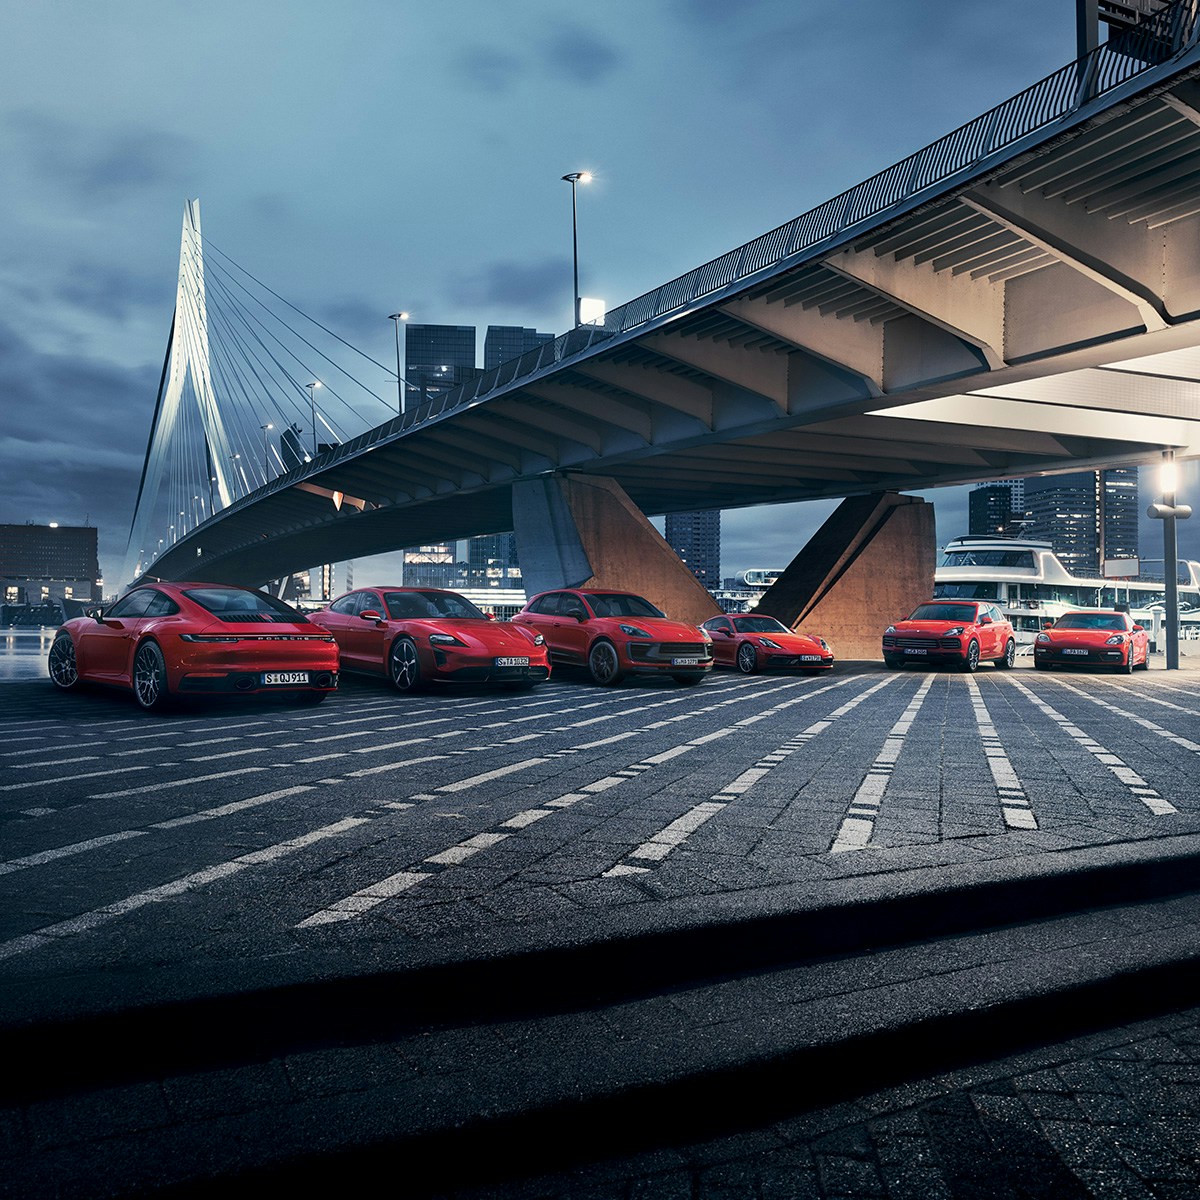 Mehrere Porsche-Autos auf der Straße, vor einer Brücke.